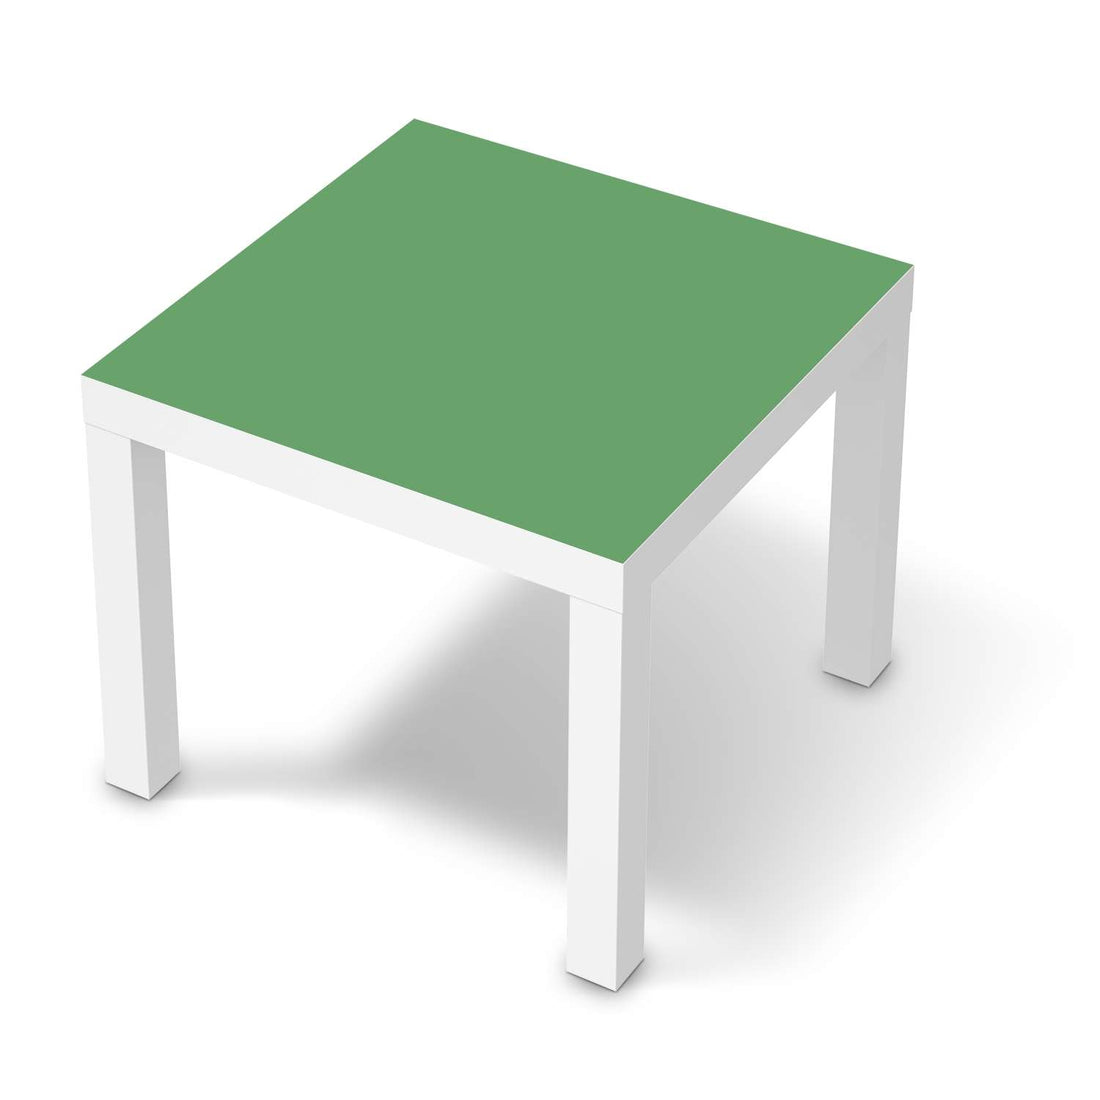 Möbelfolie Grün Light - IKEA Lack Tisch 55x55 cm - weiss